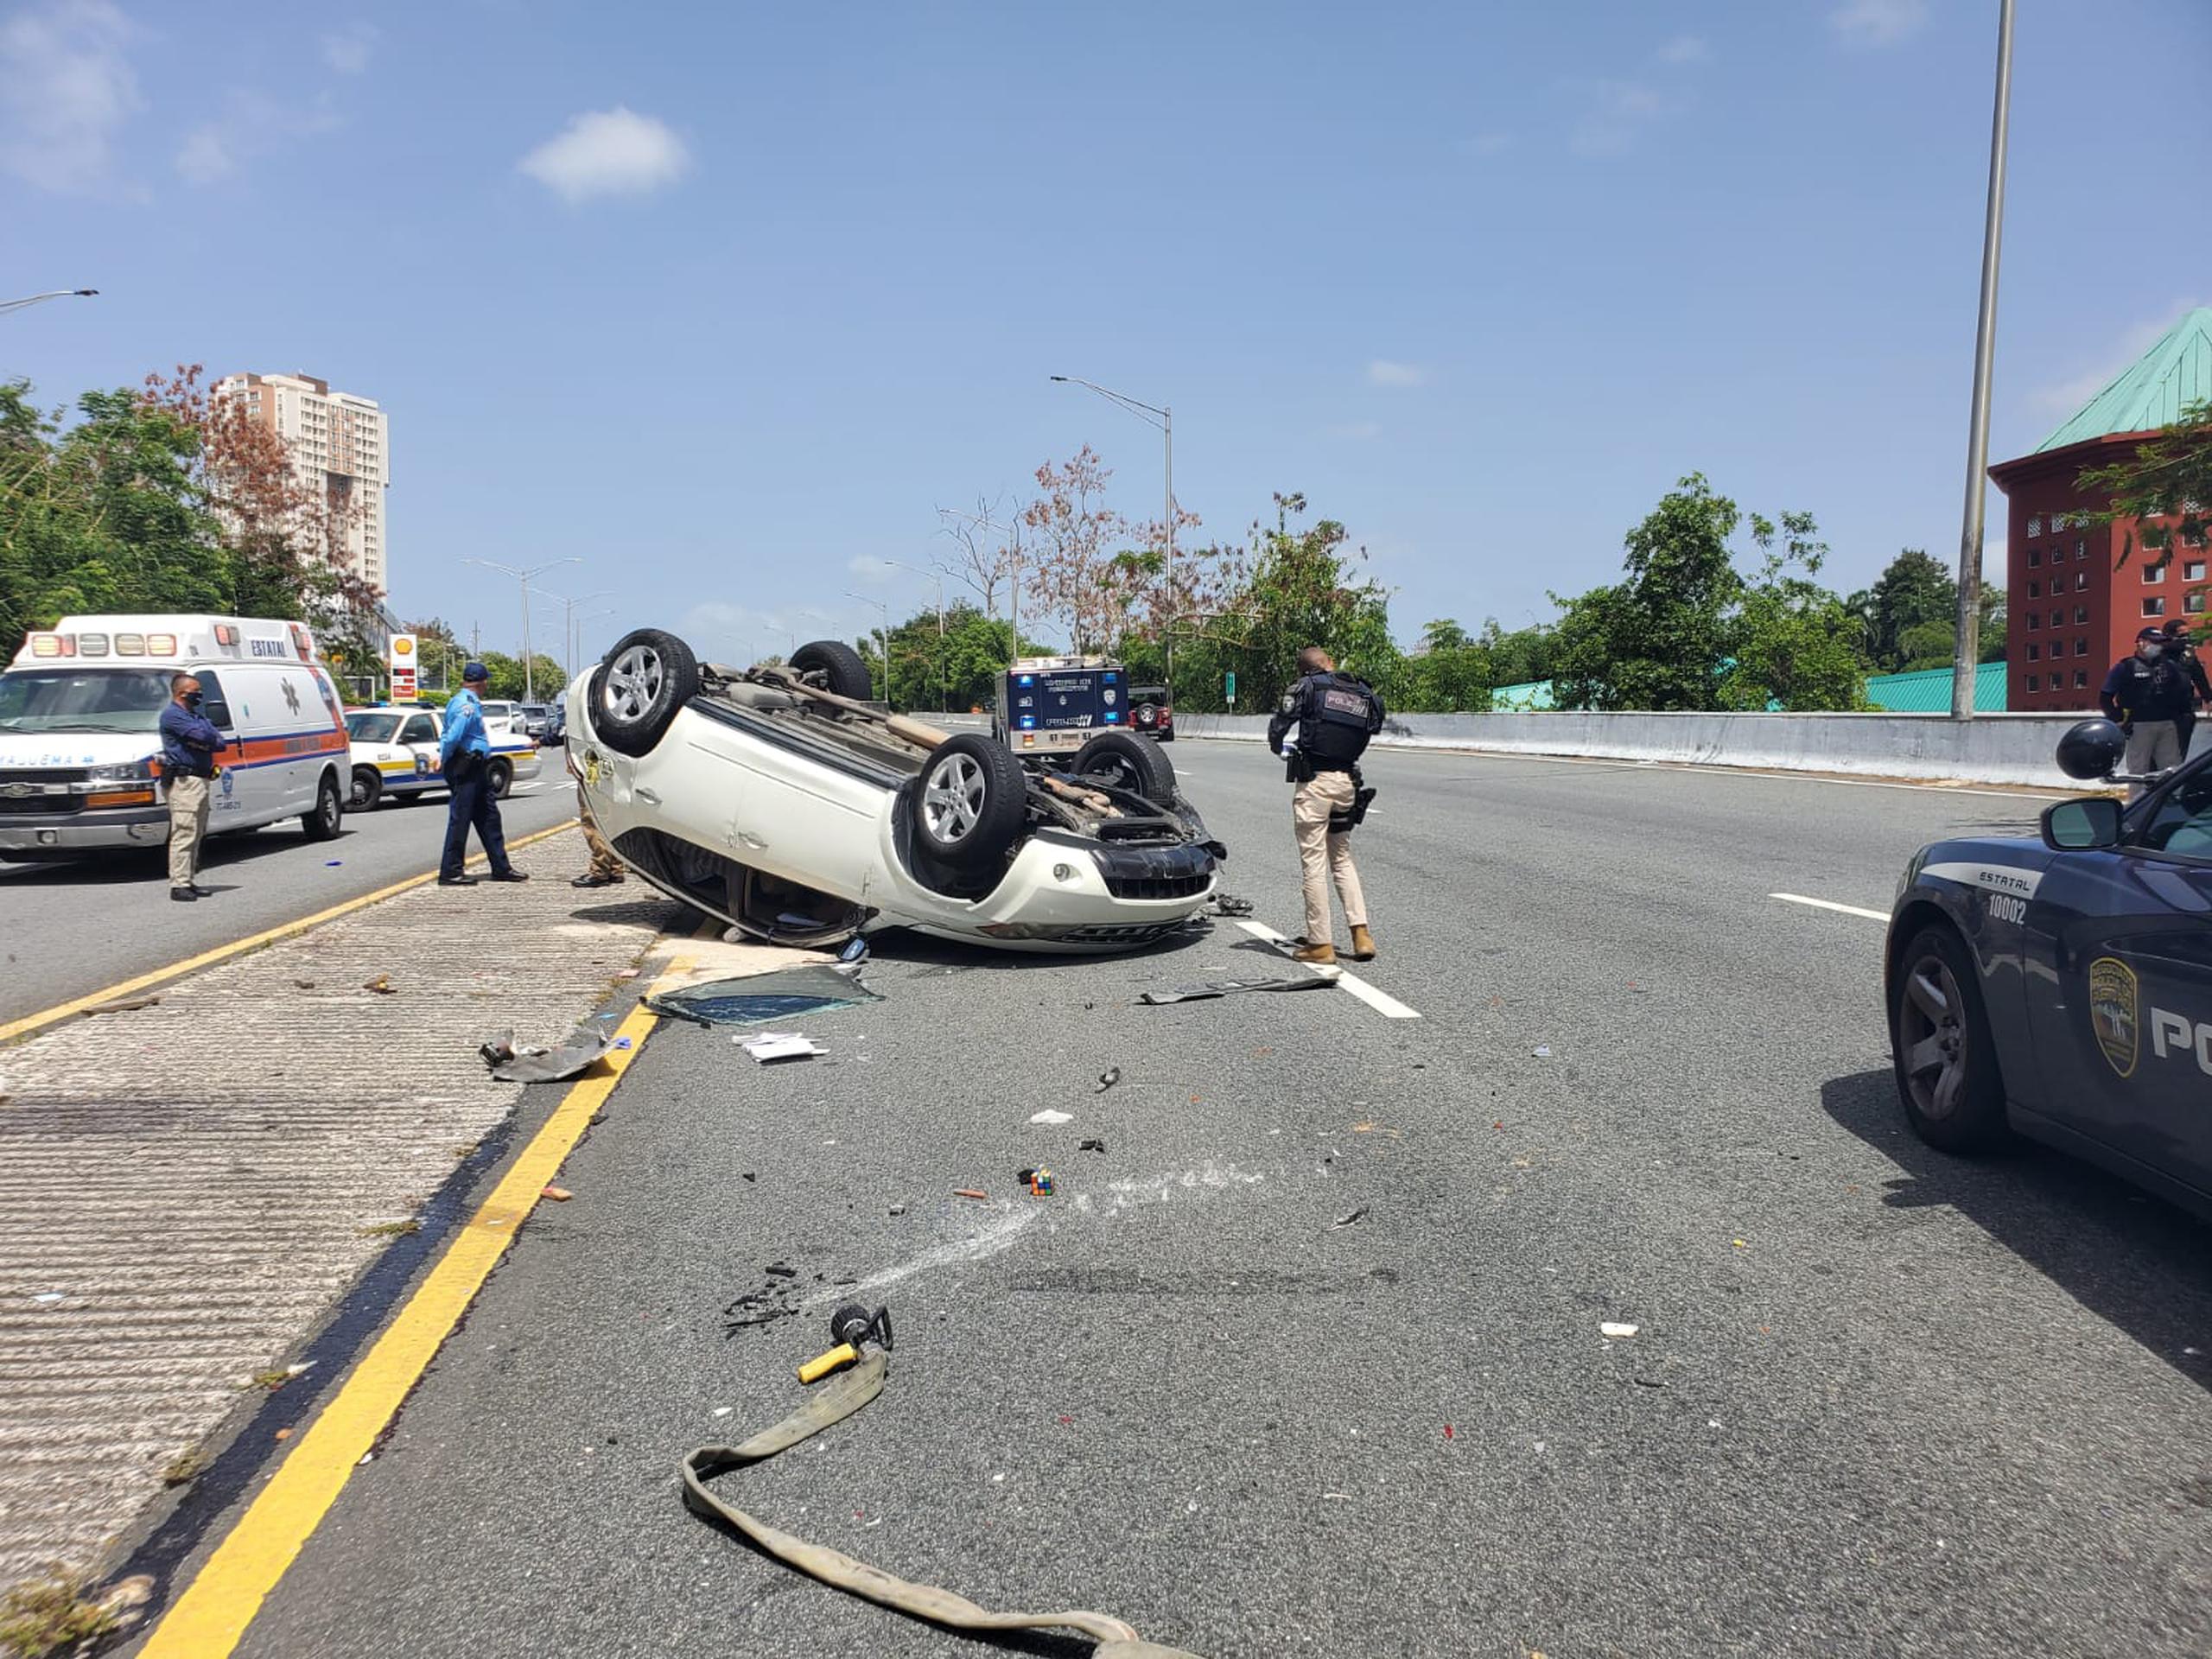 Una conductora falleció en un accidente de tránsito ocurrido esta tarde en la carretera PR-199 frente al centro comercial los paseos, tras impactar un jeep y volcarse.